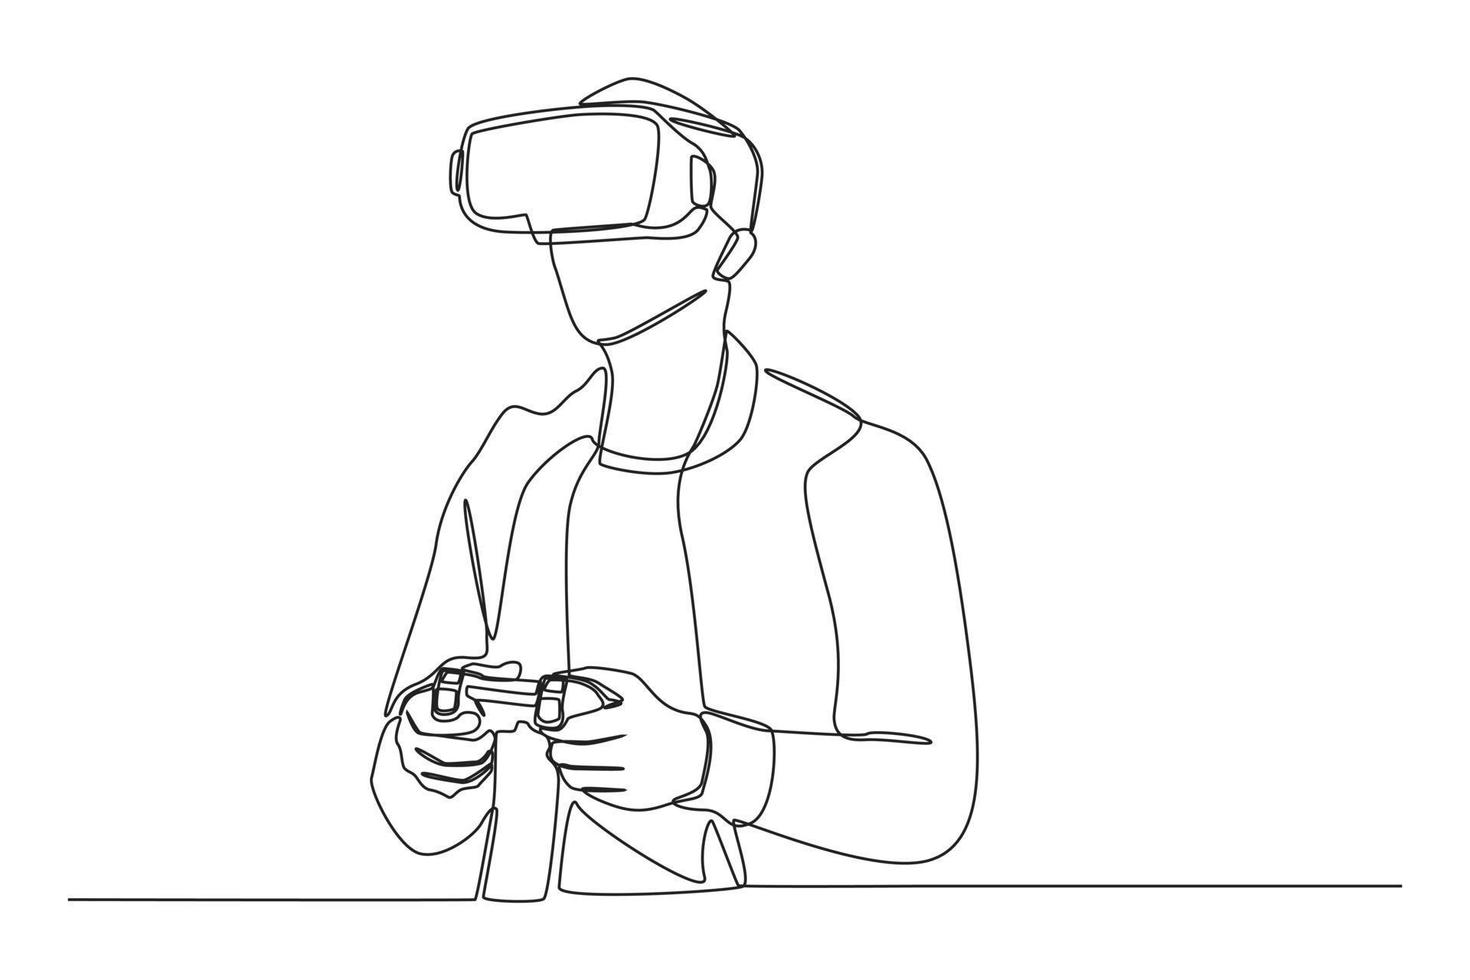 een doorlopende lijntekening van een gelukkige jonge man die kijkt in een vr-headset pc-gadget en een pc-game speelt met een joystickconsole. virtueel spelconcept. enkele lijn tekenen ontwerp vector grafische afbeelding.